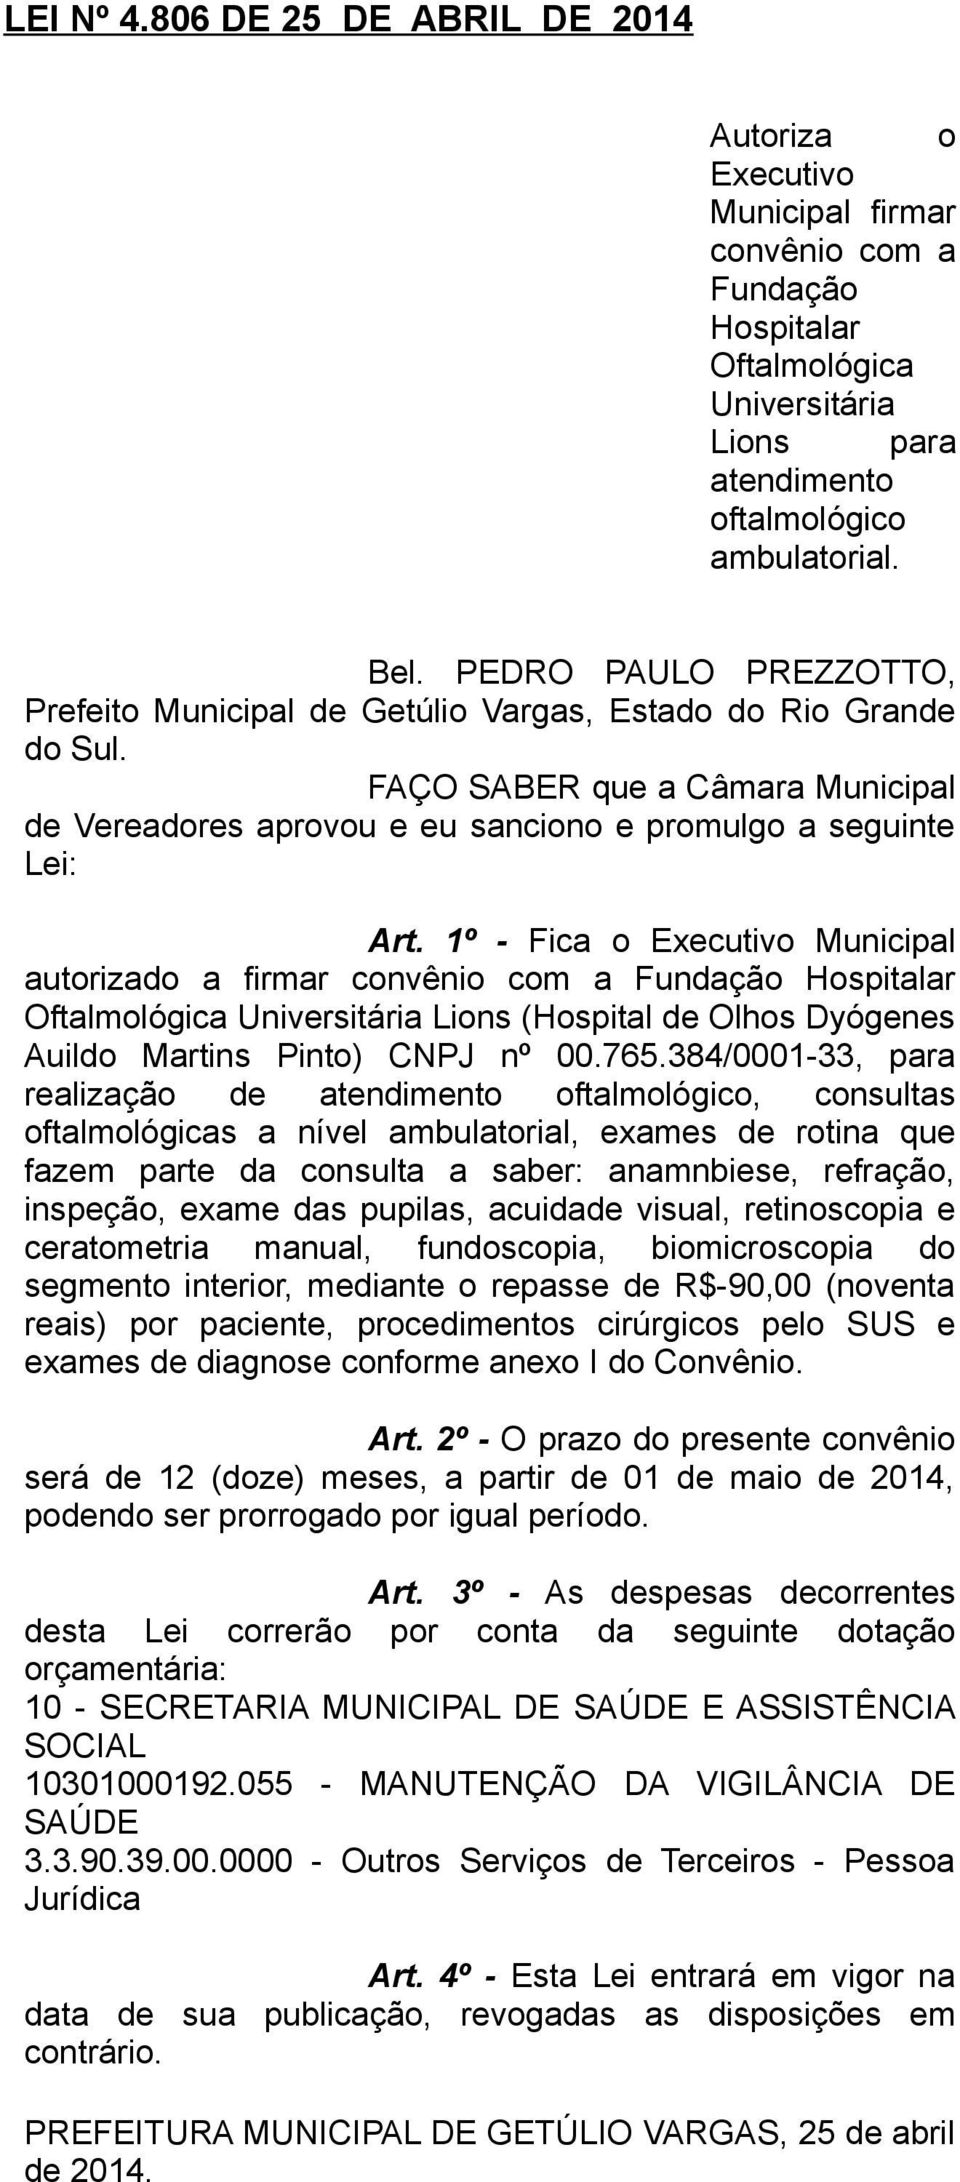 1º - Fica o Executivo Municipal autorizado a firmar convênio com a Fundação Hospitalar Oftalmológica Universitária Lions (Hospital de Olhos Dyógenes Auildo Martins Pinto) CNPJ nº 00.765.